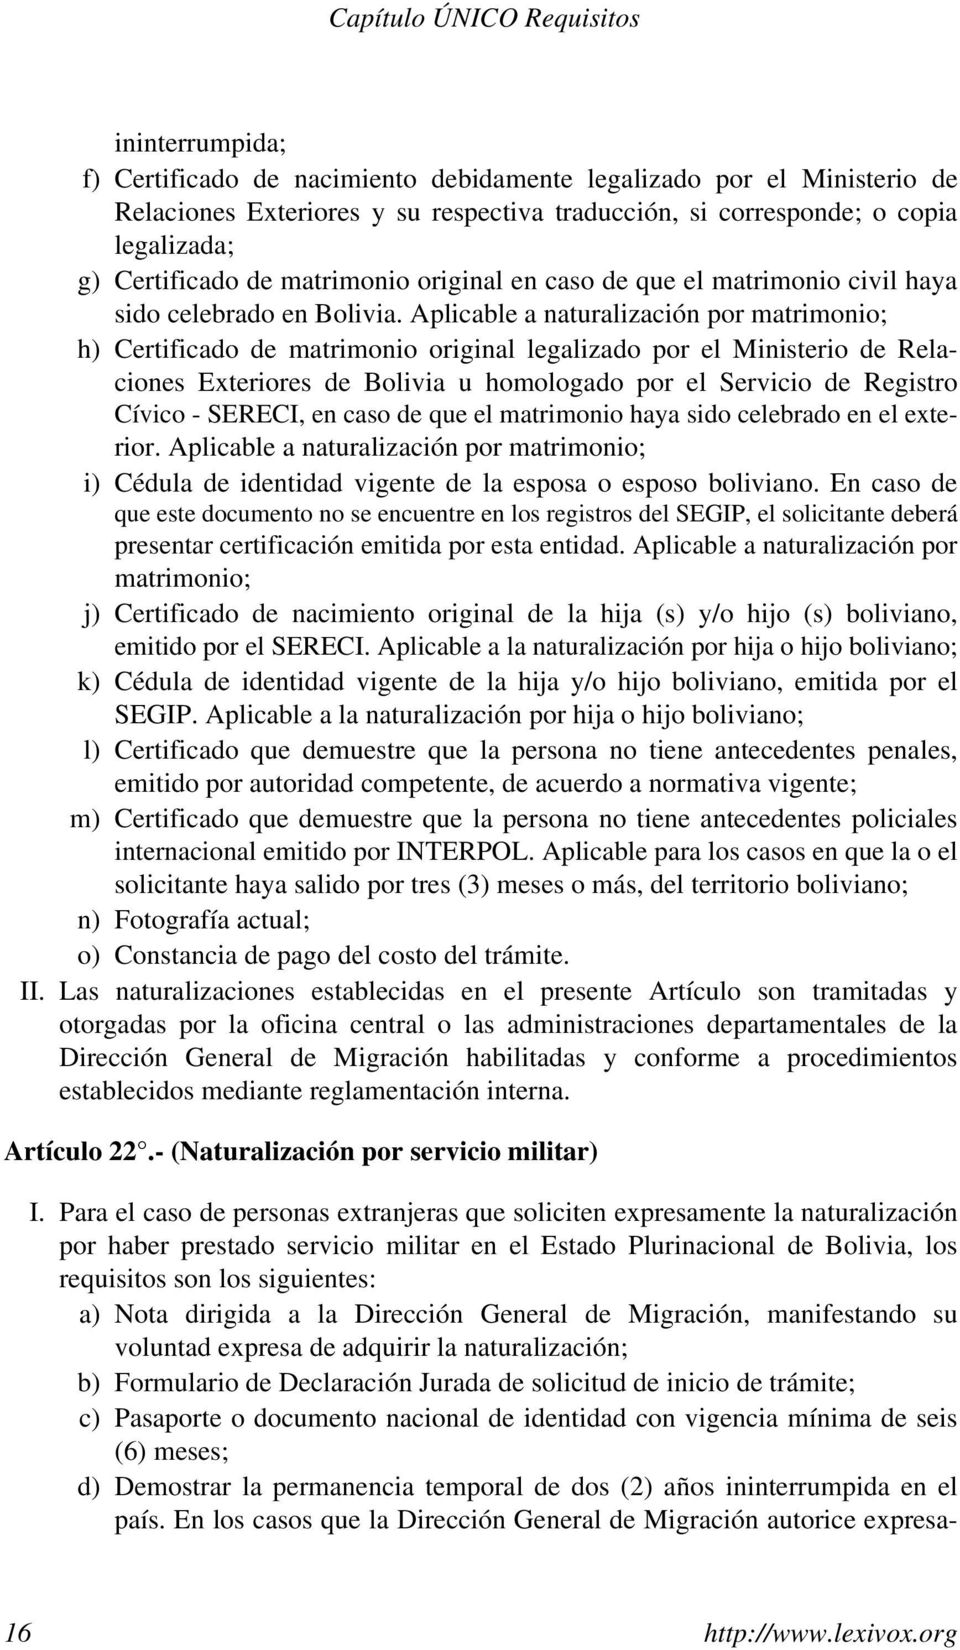 Aplicable a naturalización por matrimonio; h) Certificado de matrimonio original legalizado por el Ministerio de Relaciones Exteriores de Bolivia u homologado por el Servicio de Registro Cívico -